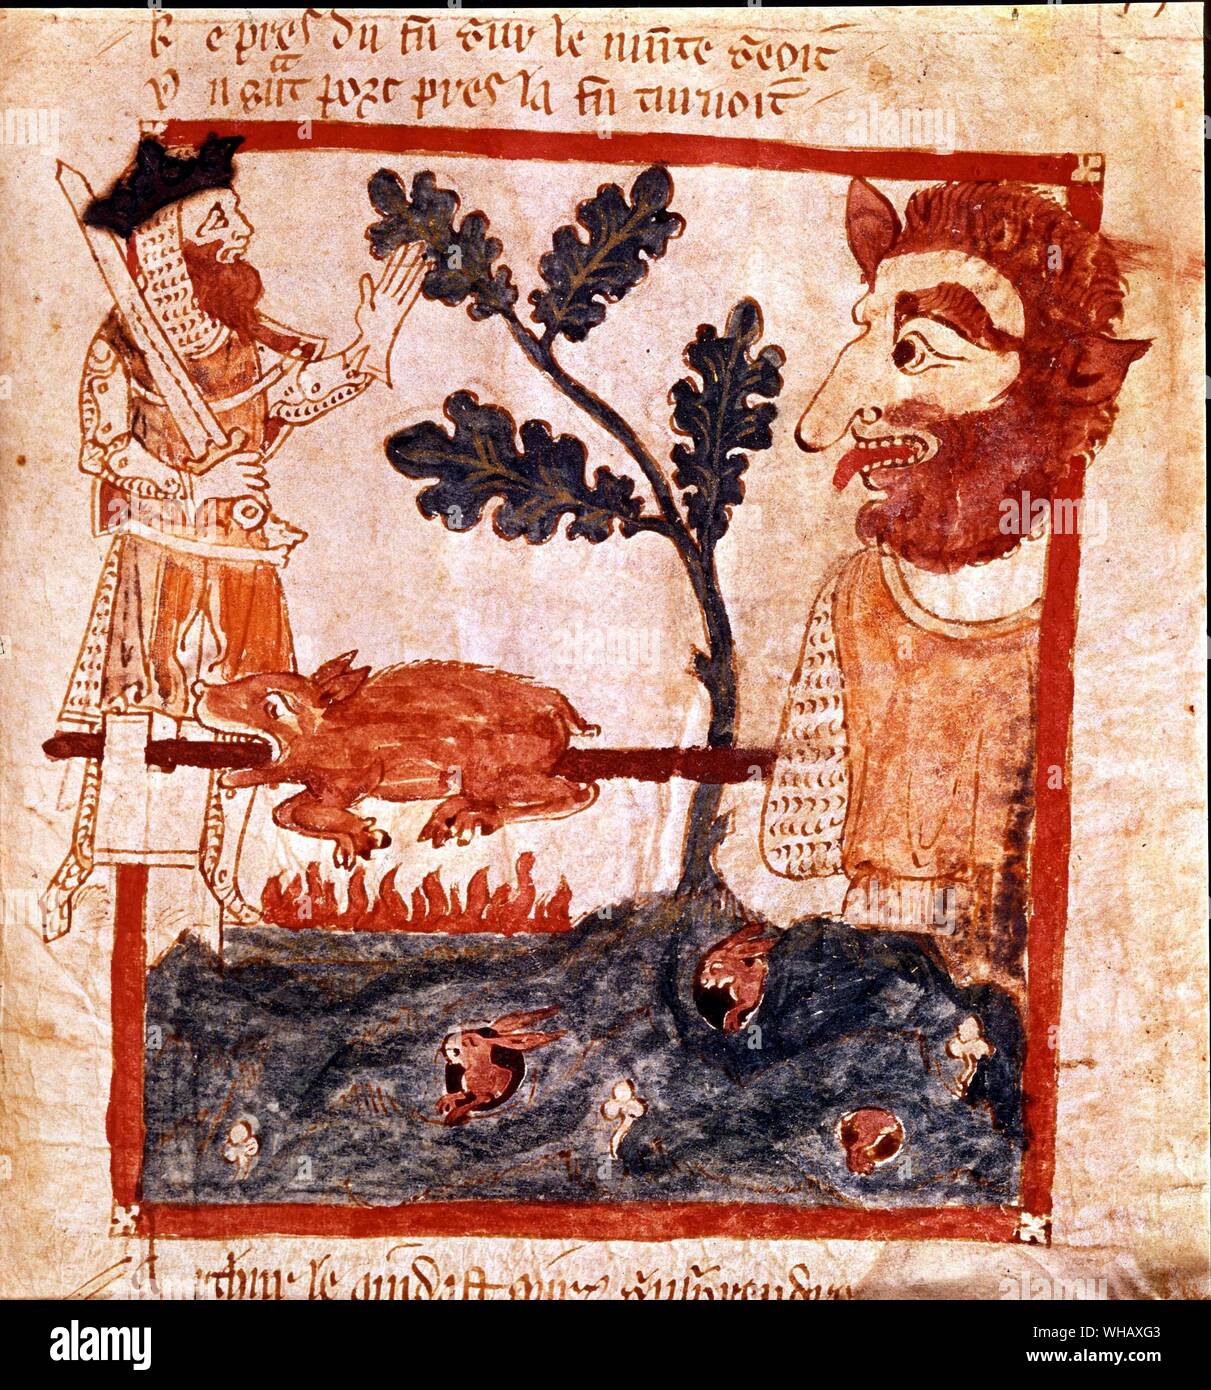 King Arthur incontra il gigante sul Monte San Michele tostatura di un maiale allo spiedo. Il XIII secolo. Foto Stock